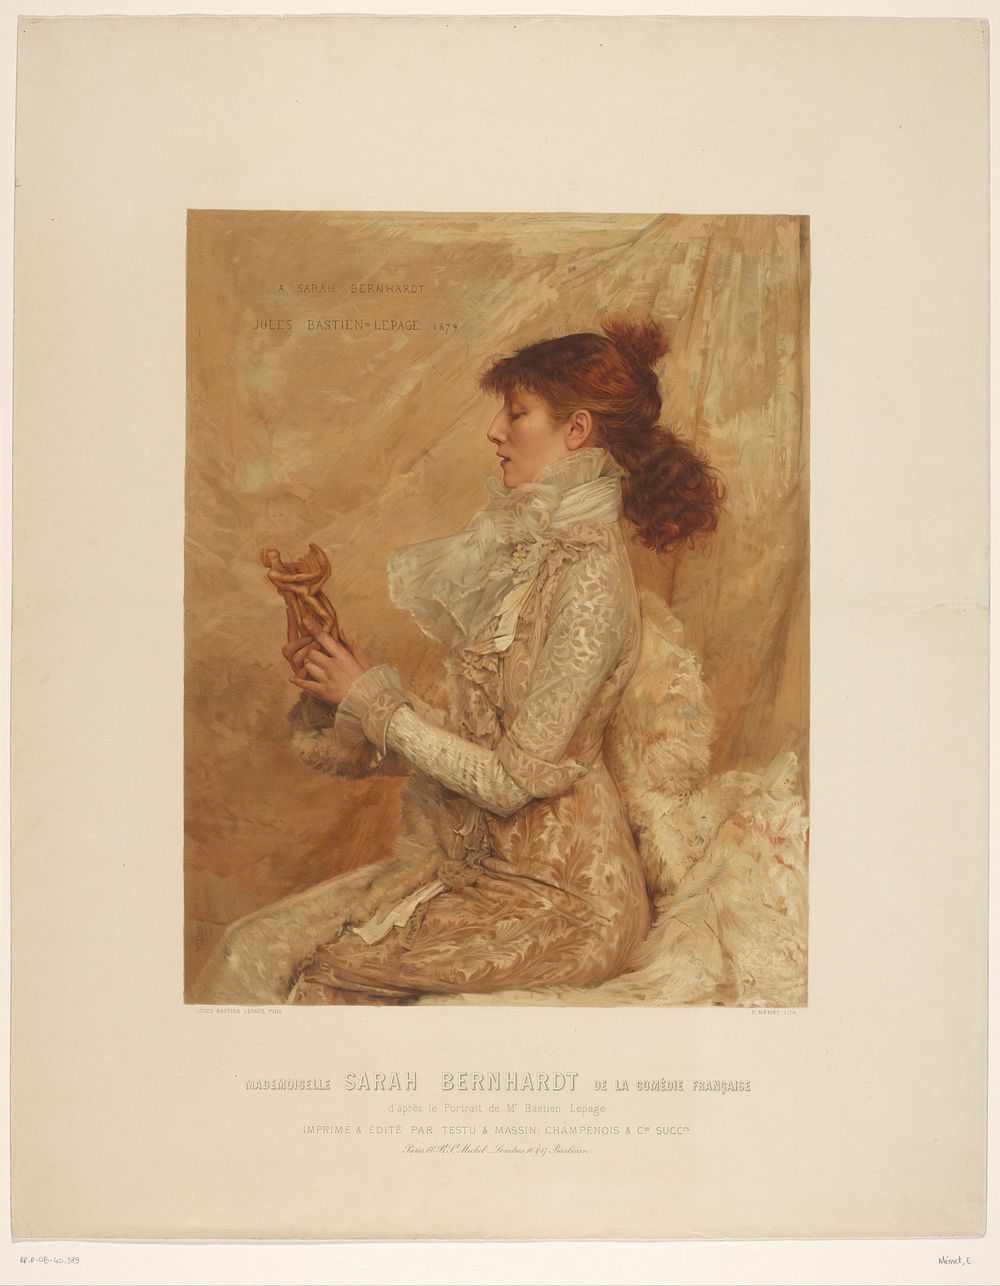 Portret van Sarah Bernhardt (1879 - 1886) by E Mémet, Jules Bastien Lepage, Champenois et cie successeurs Testu et Massin…